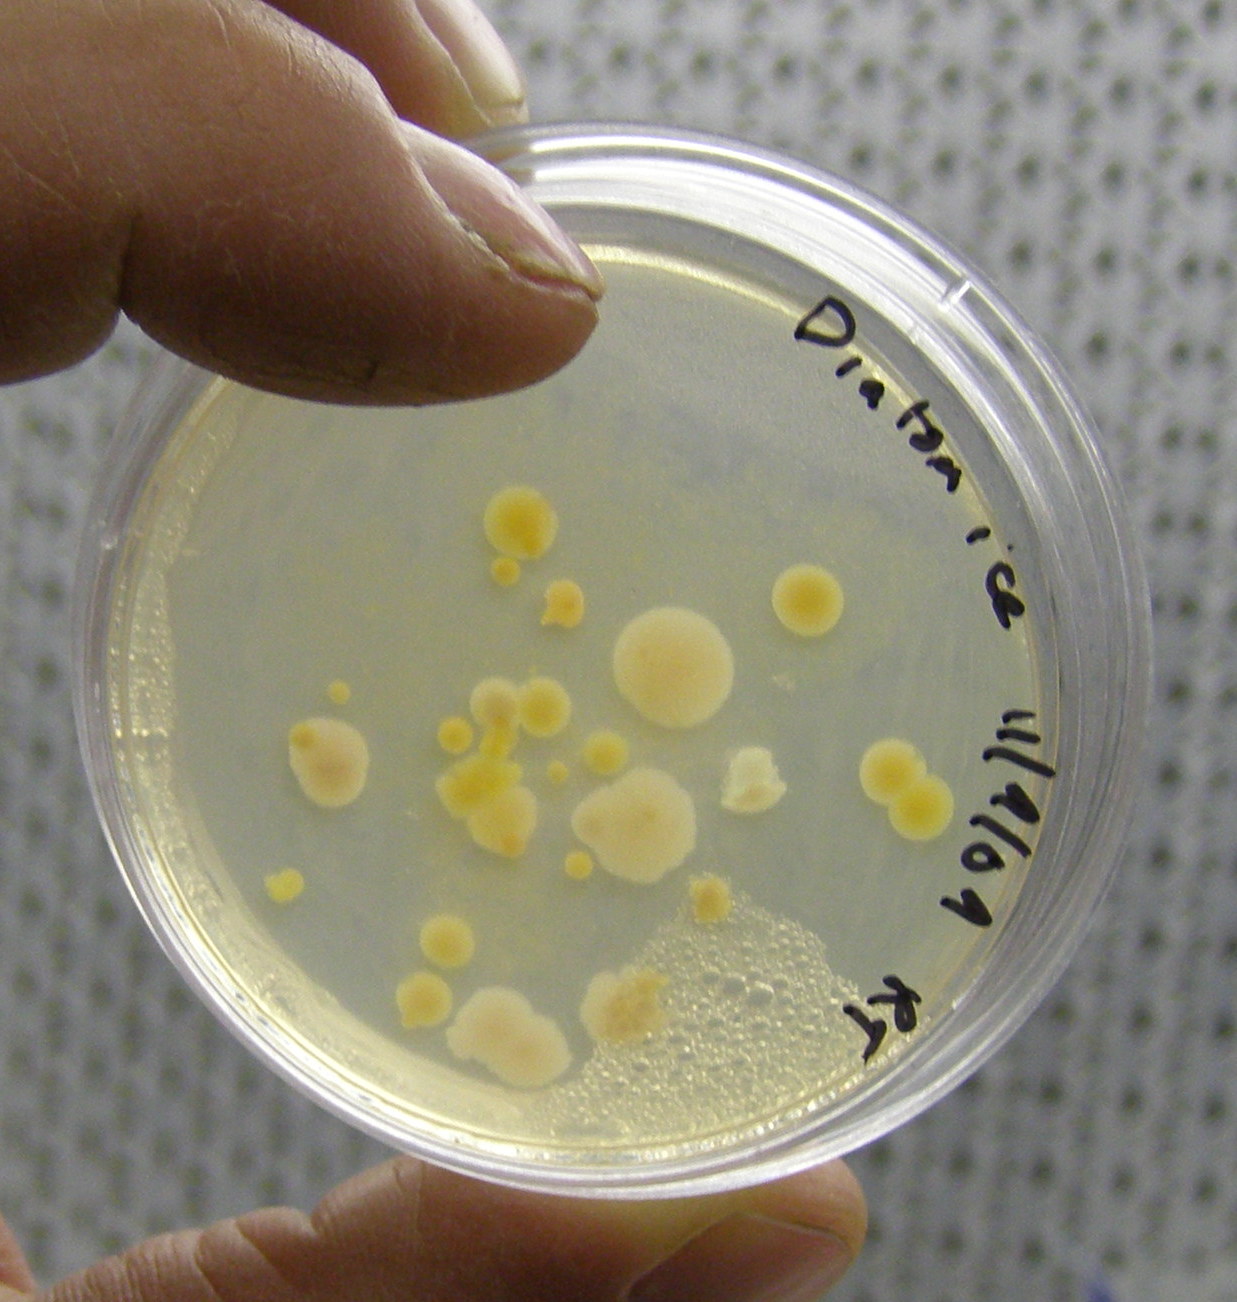 close-up of the Petri dish